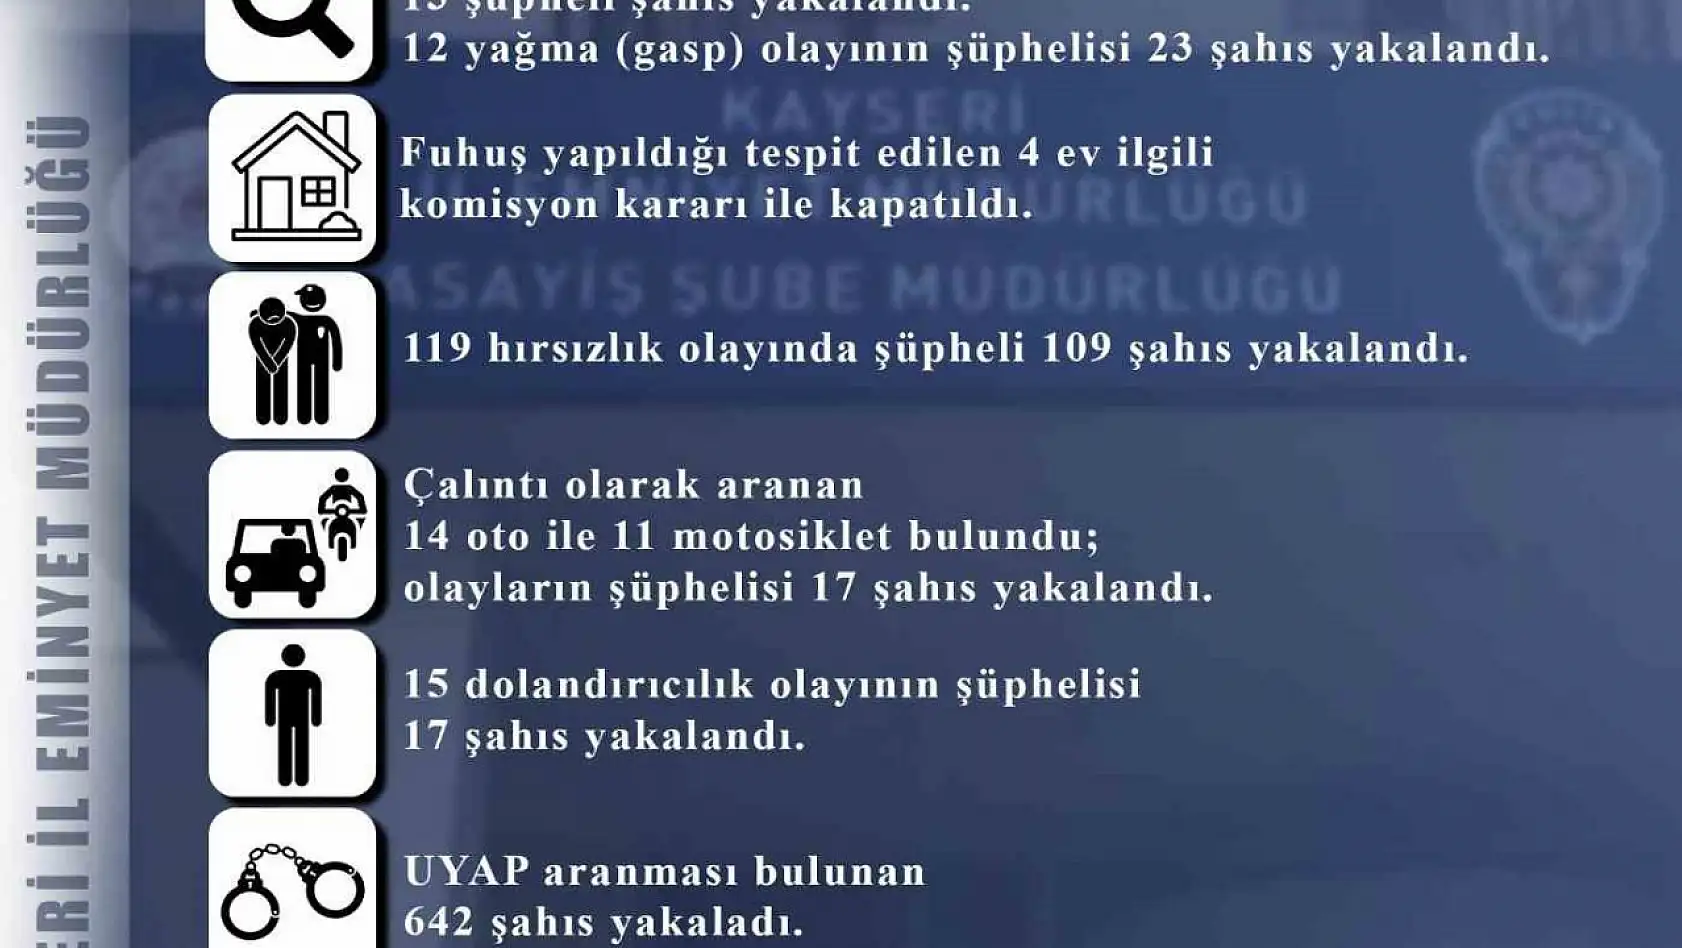 Kayseri'de 119 hırsızlık olayının şüphelisi 109 kişi yakalandı